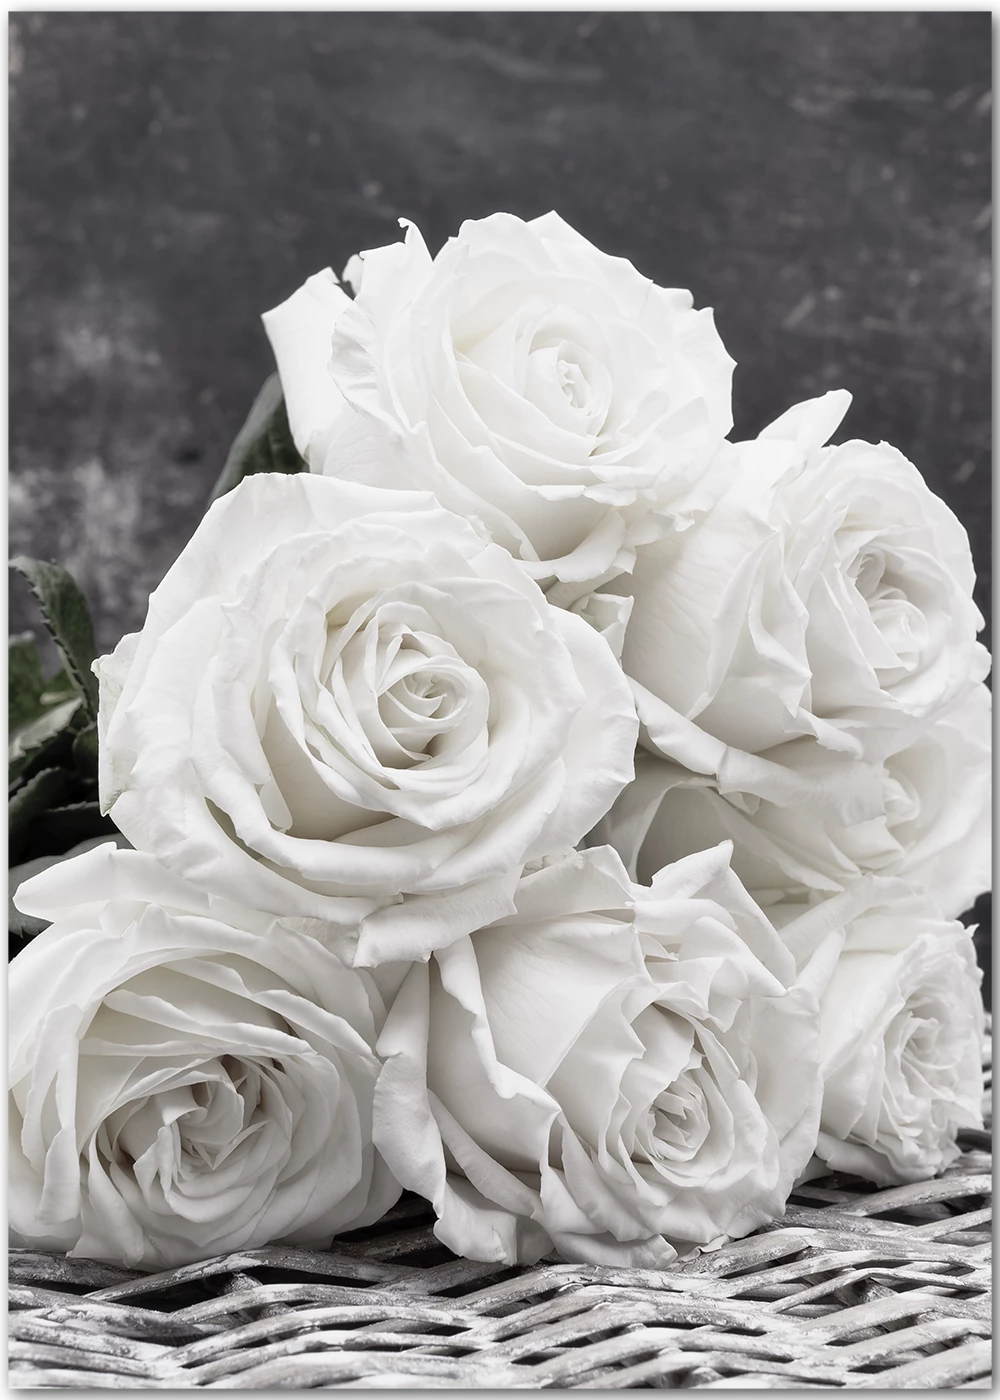  Weiße Rosen Hintergrundbild 1000x1400. Poster Weiße Rosen